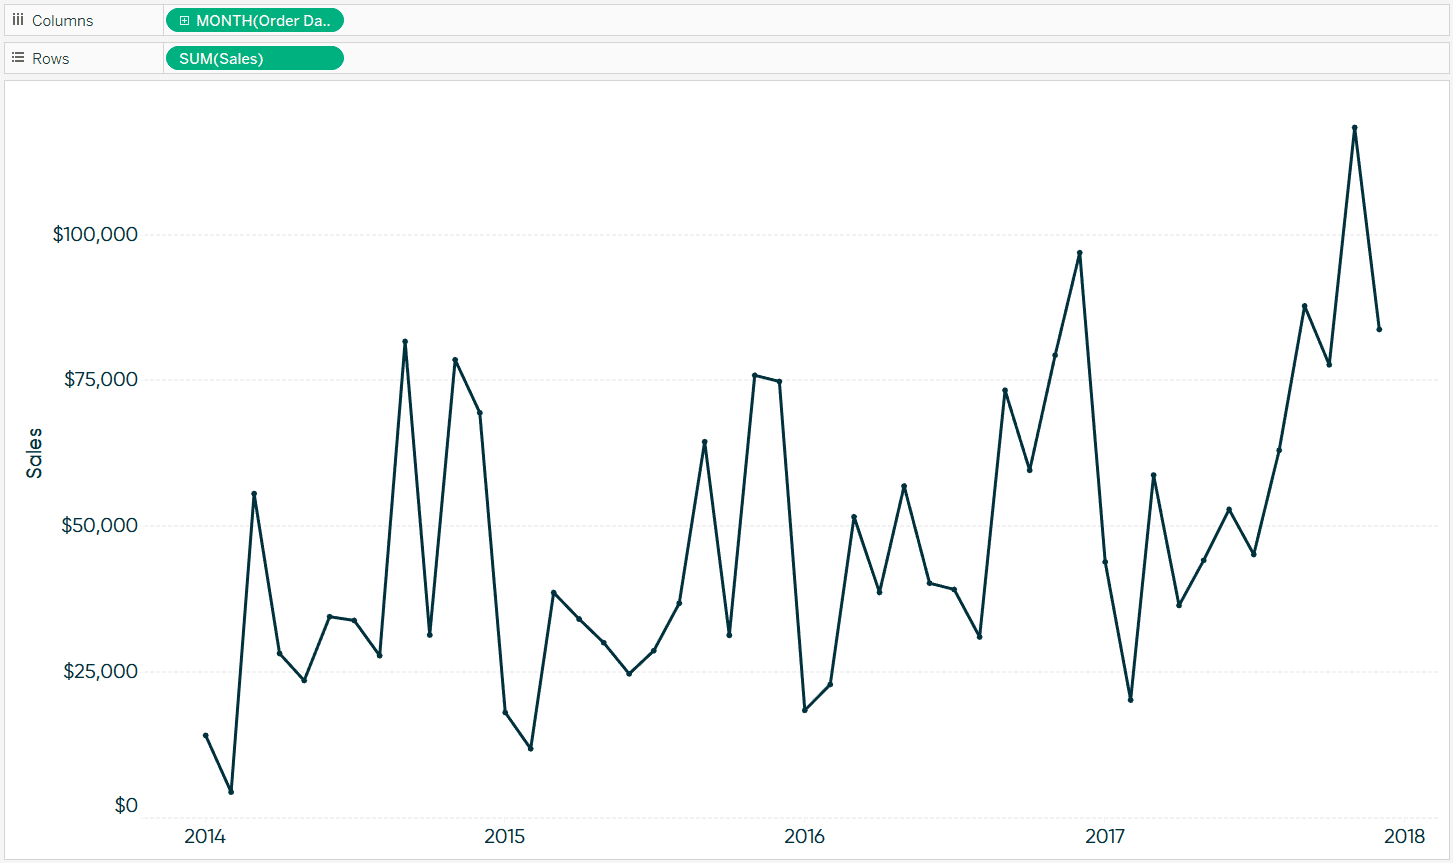 Tableau Sales by Continuous Month Line Graph